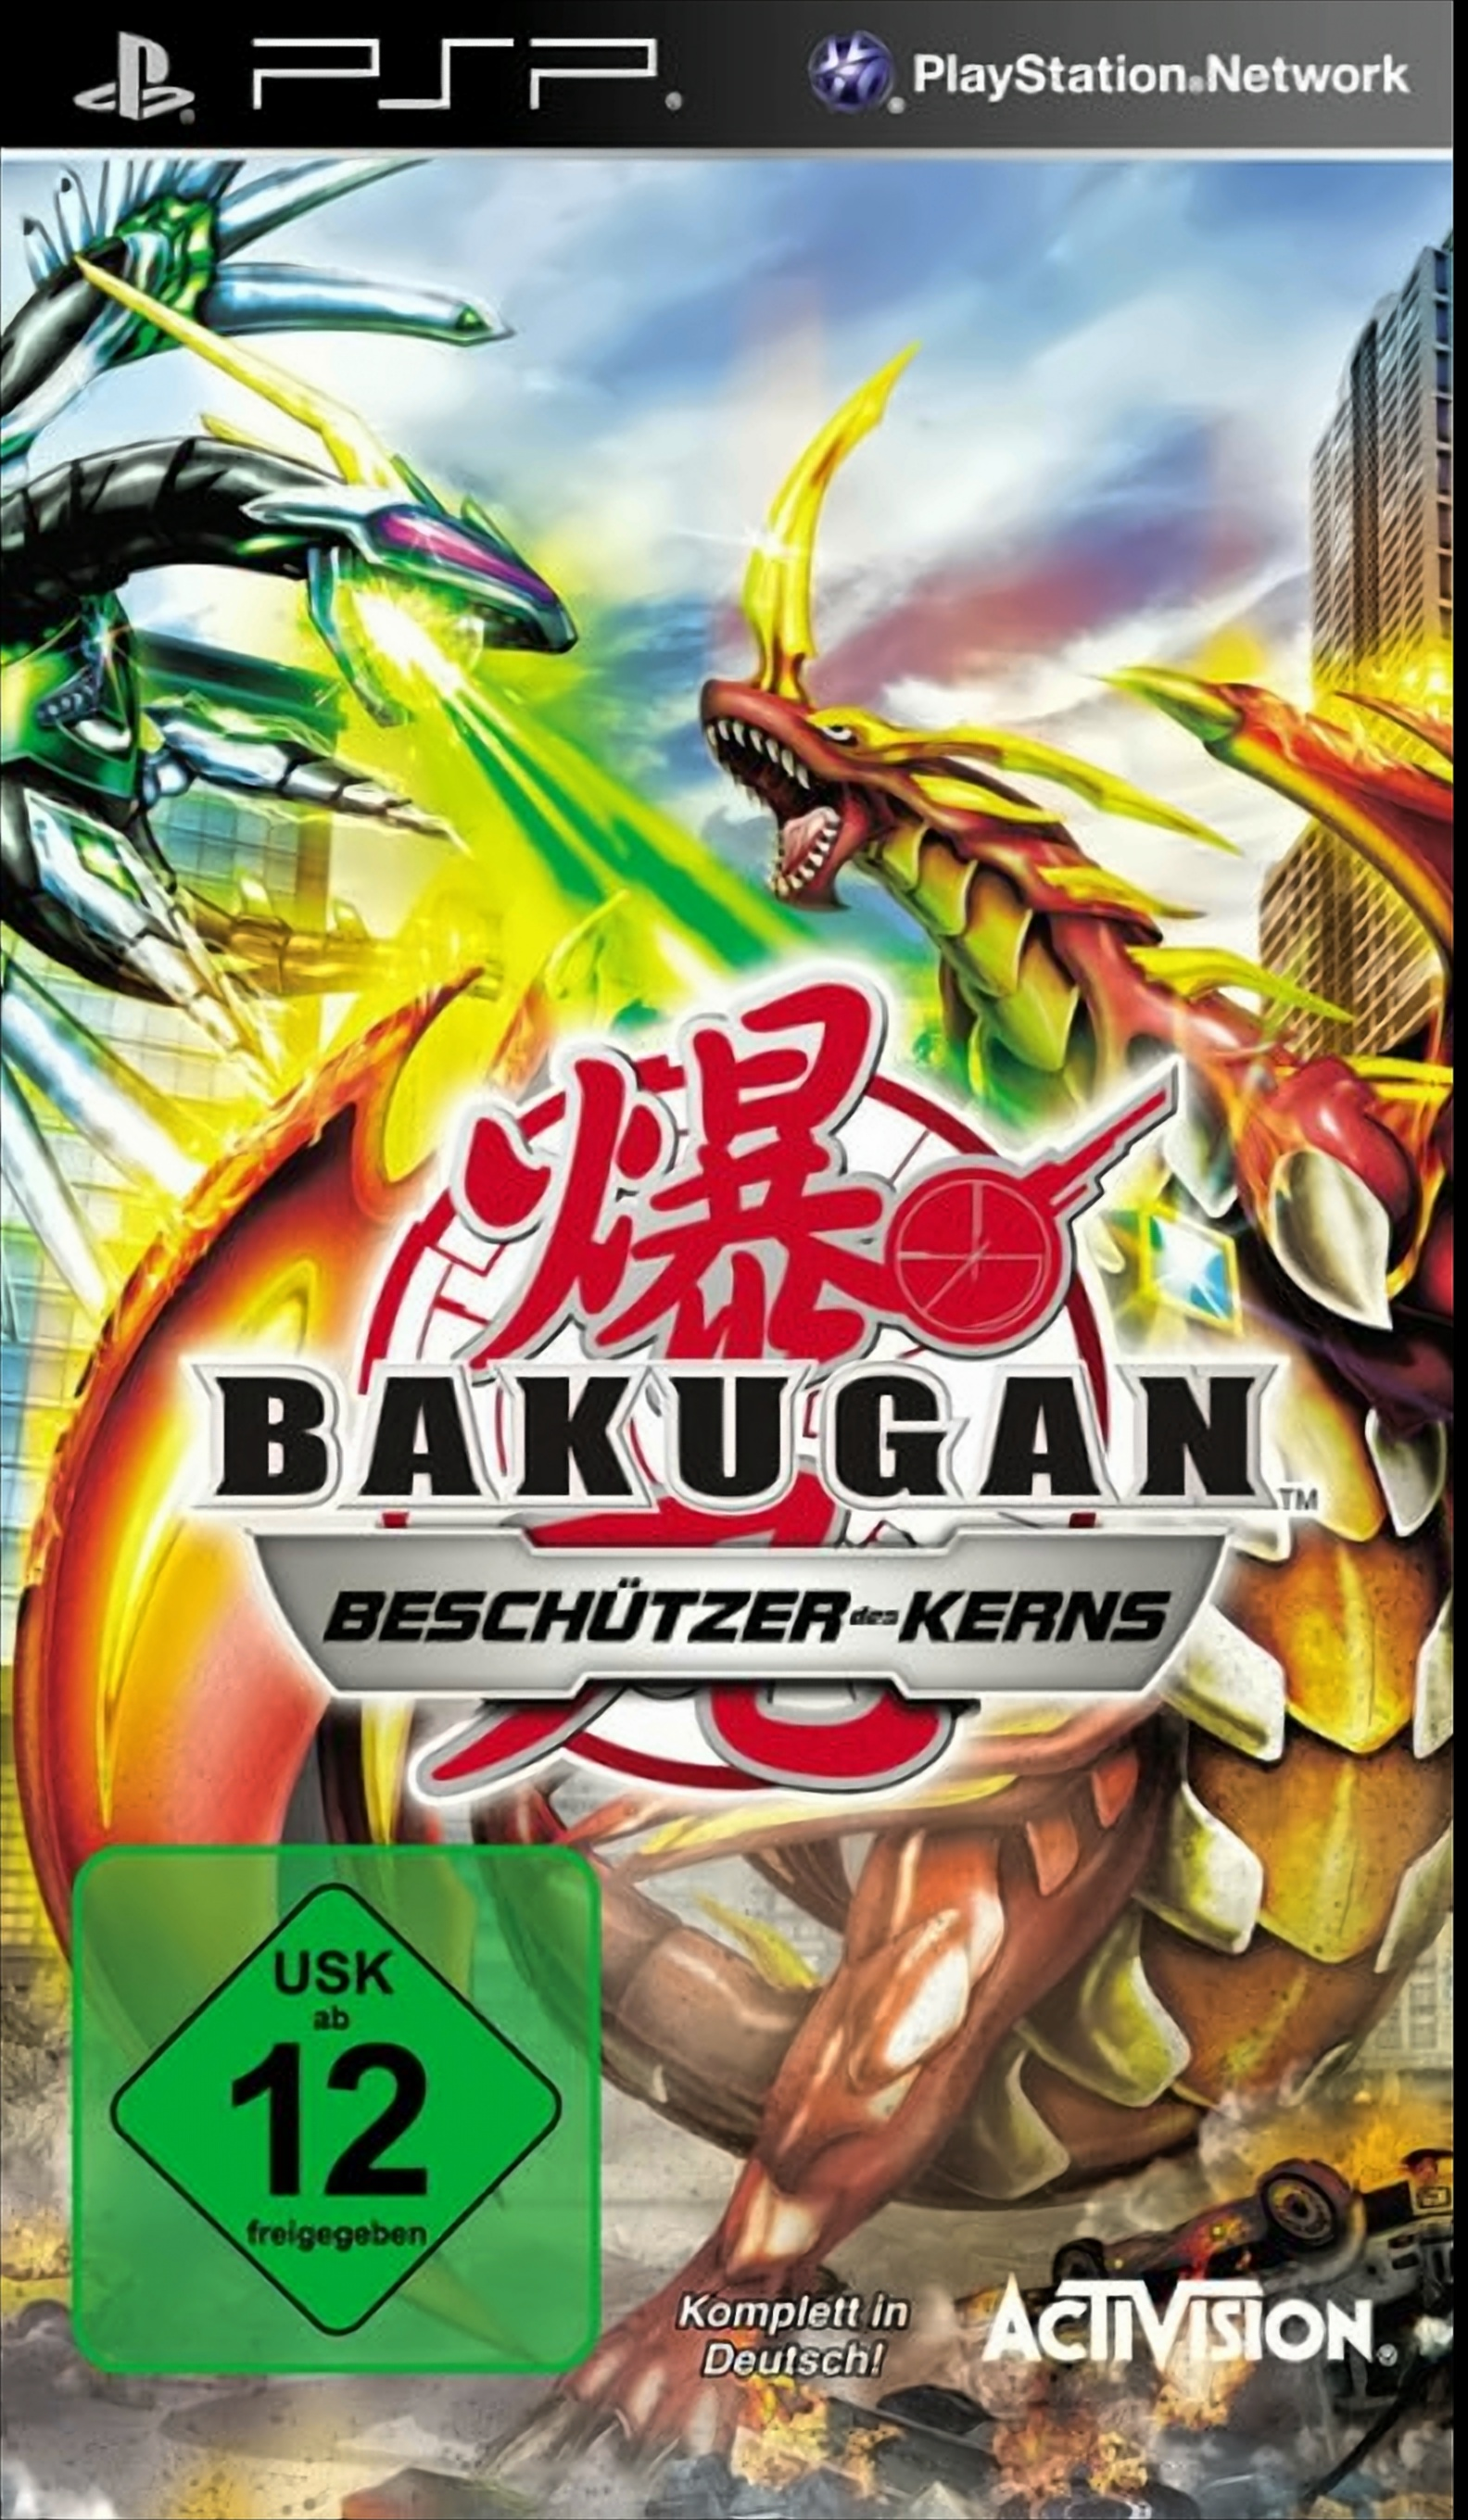 Brawlers: - [PSP] Battle Bakugan Kerns Beschützer des